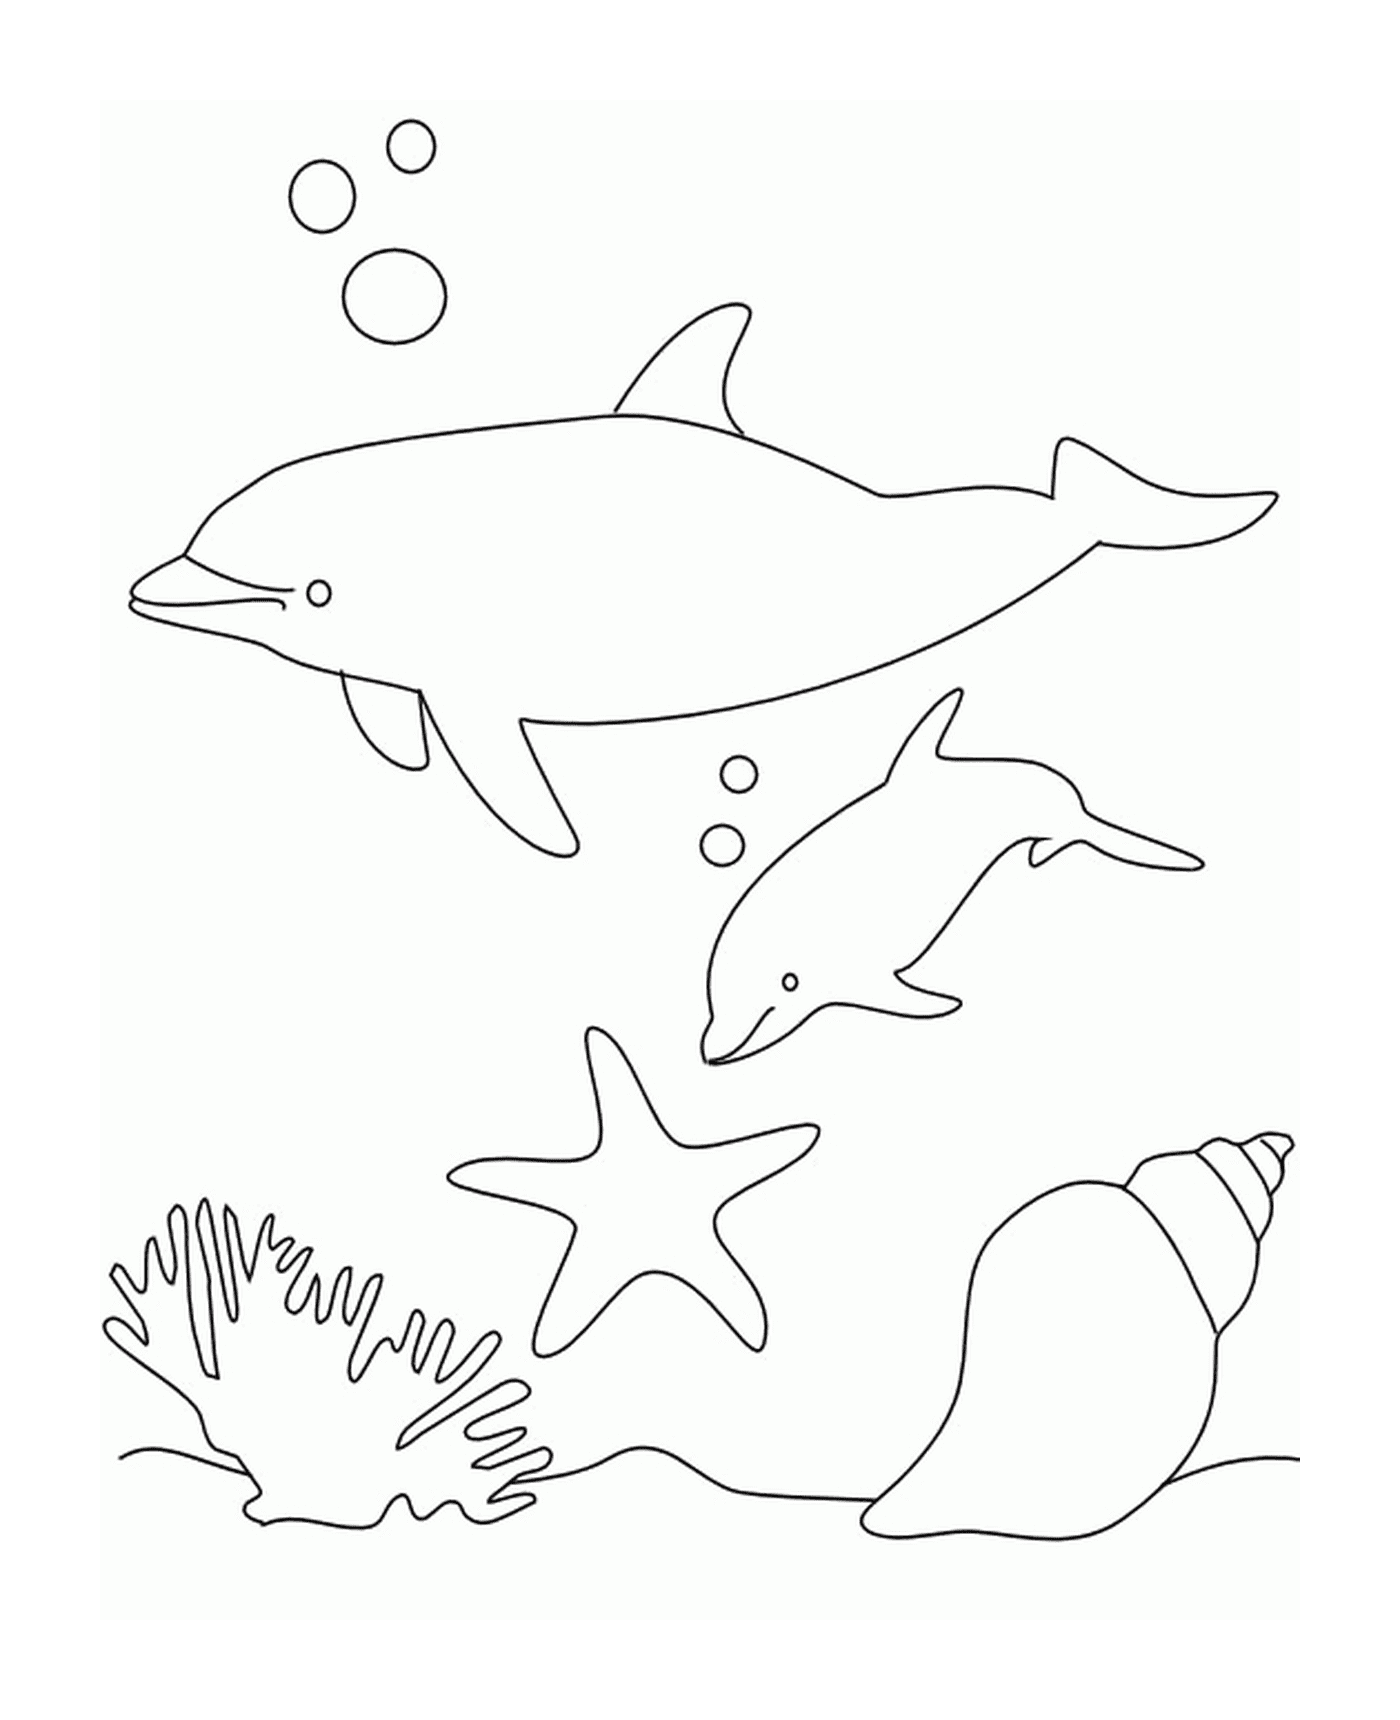  Delfini e Shellfish in acqua 